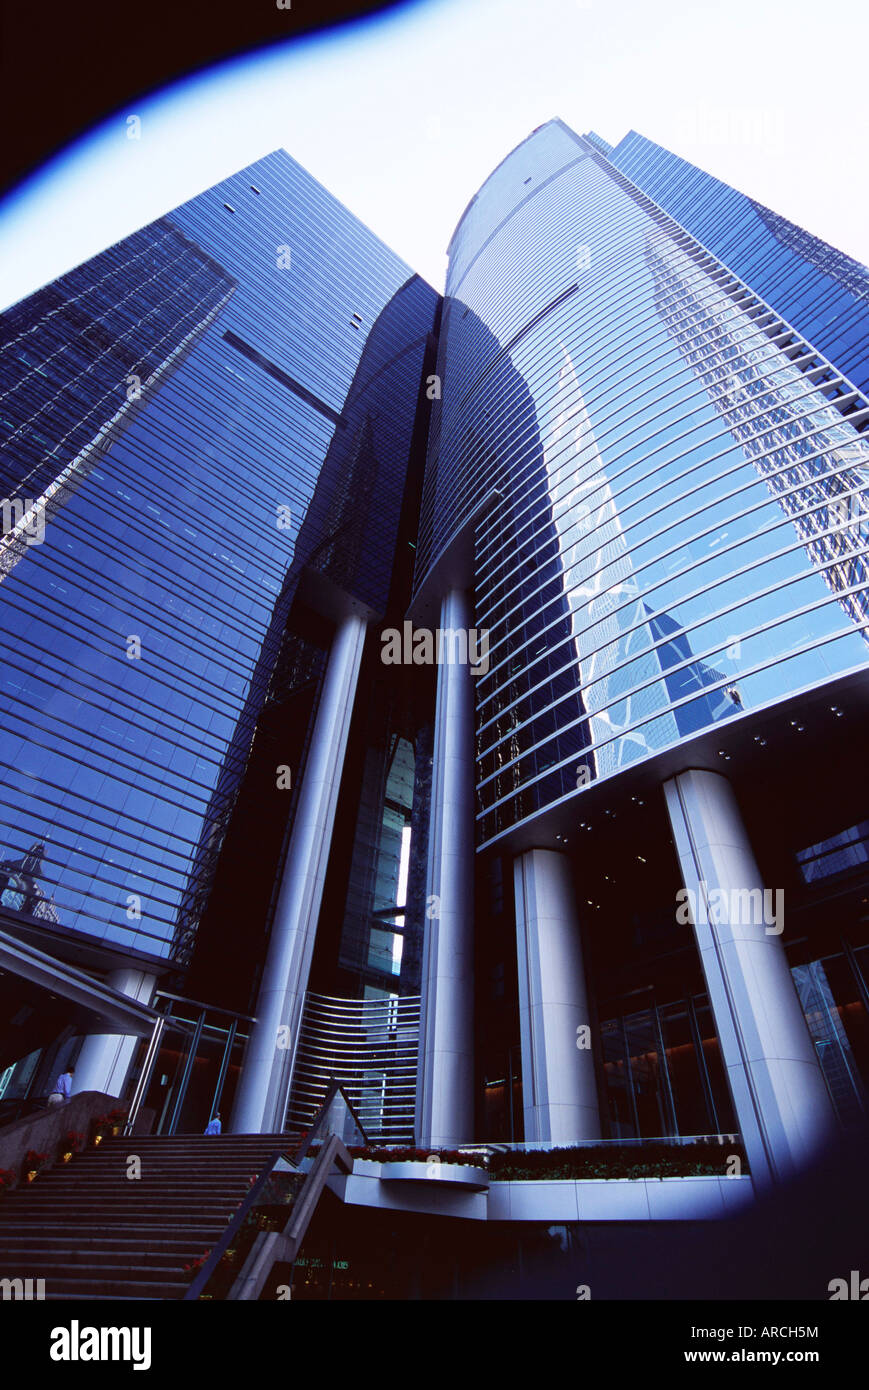 Citibank Tower, Central, Hong Kong Island, Hong Kong, China, Asia Stock Photo